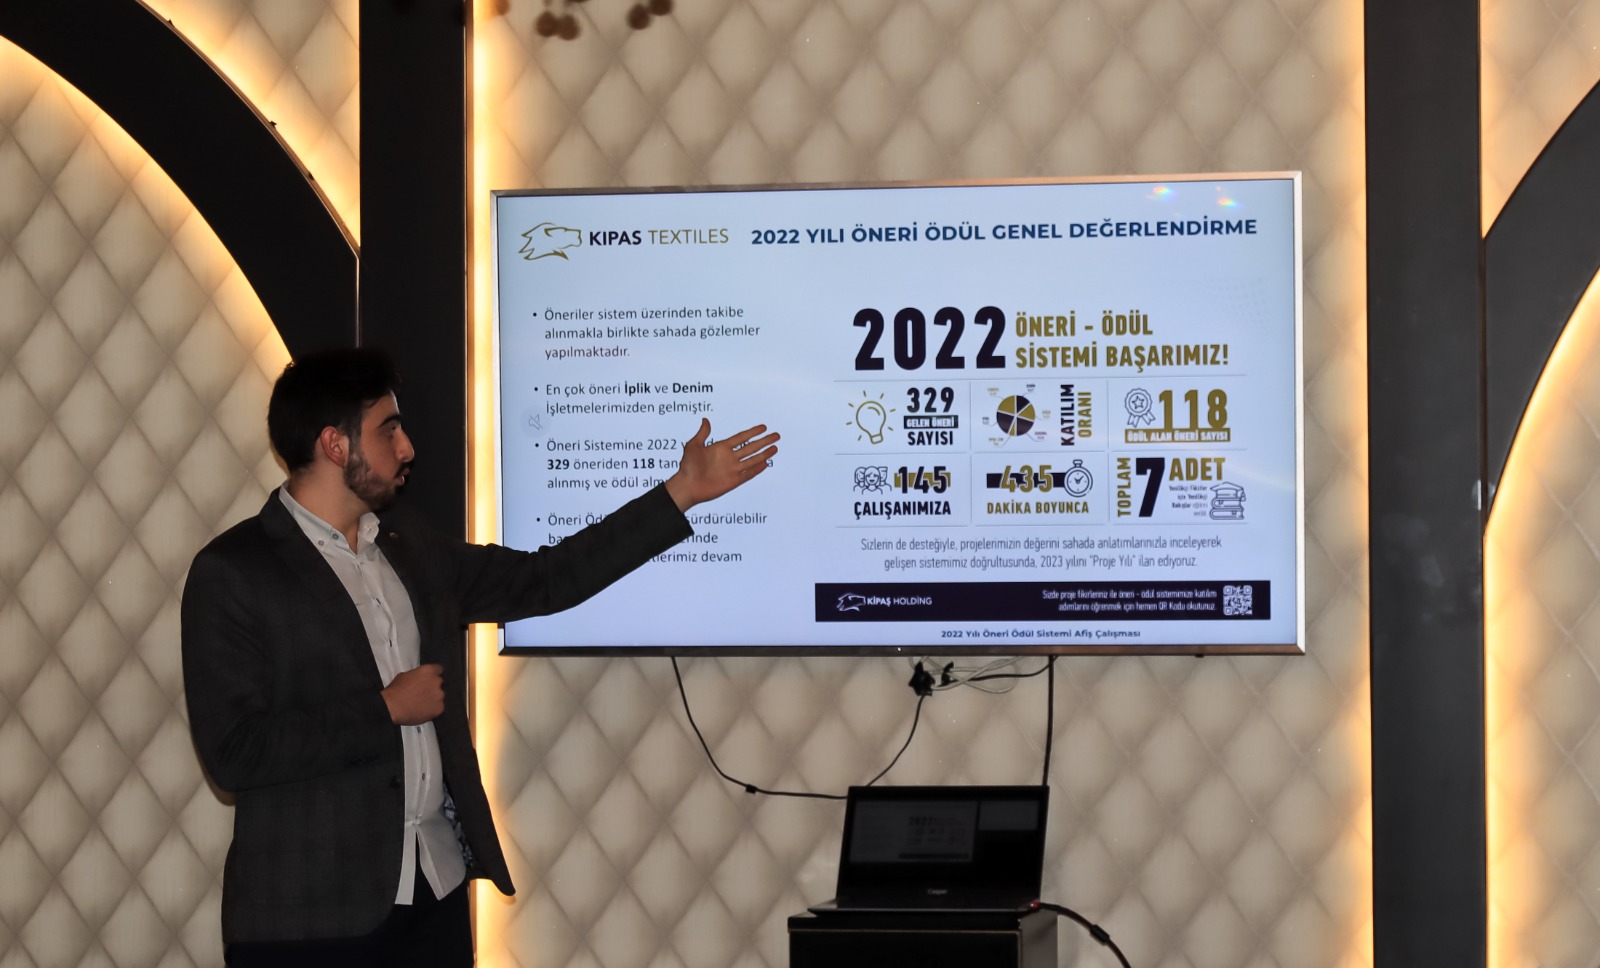 Kipaş Holding Öneri-ödül Sistemi Kurulu 2022 Yılını Değerlendirdi